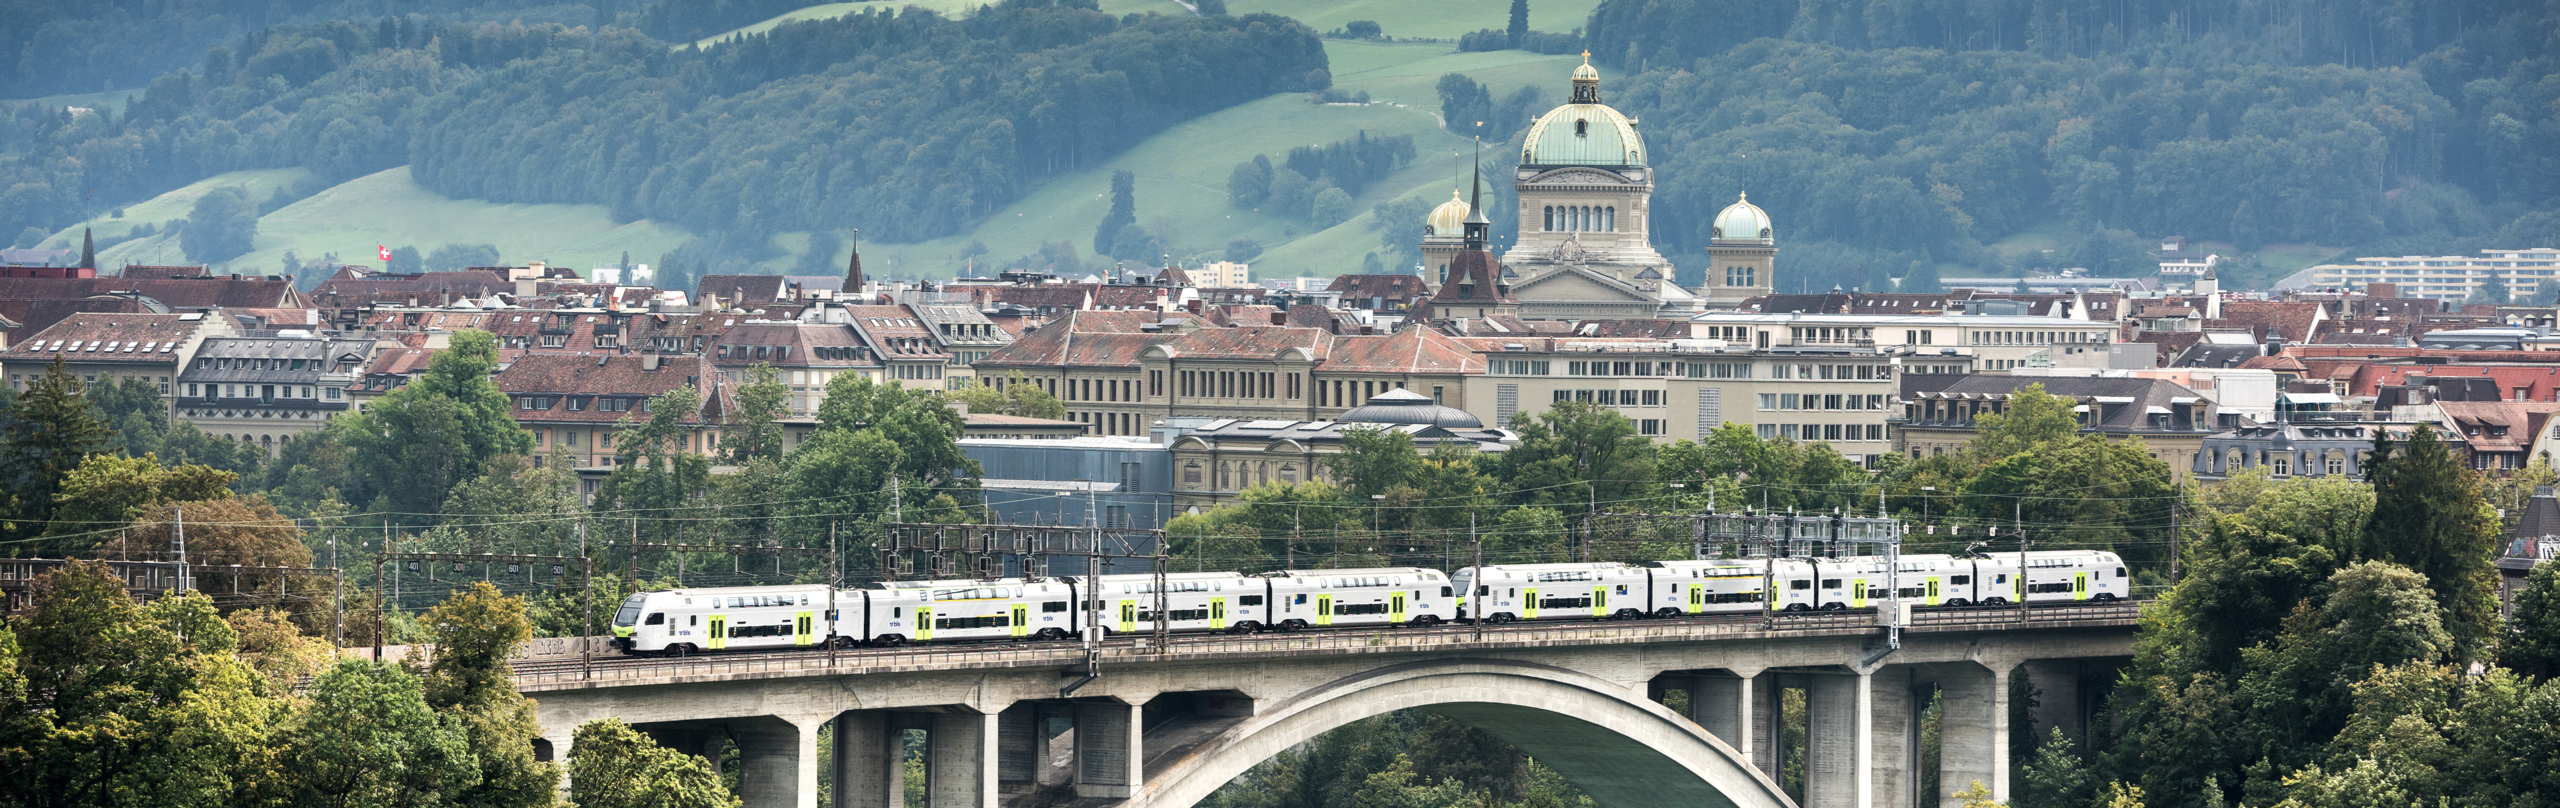 Treno con la città di Berna sullo sfondo